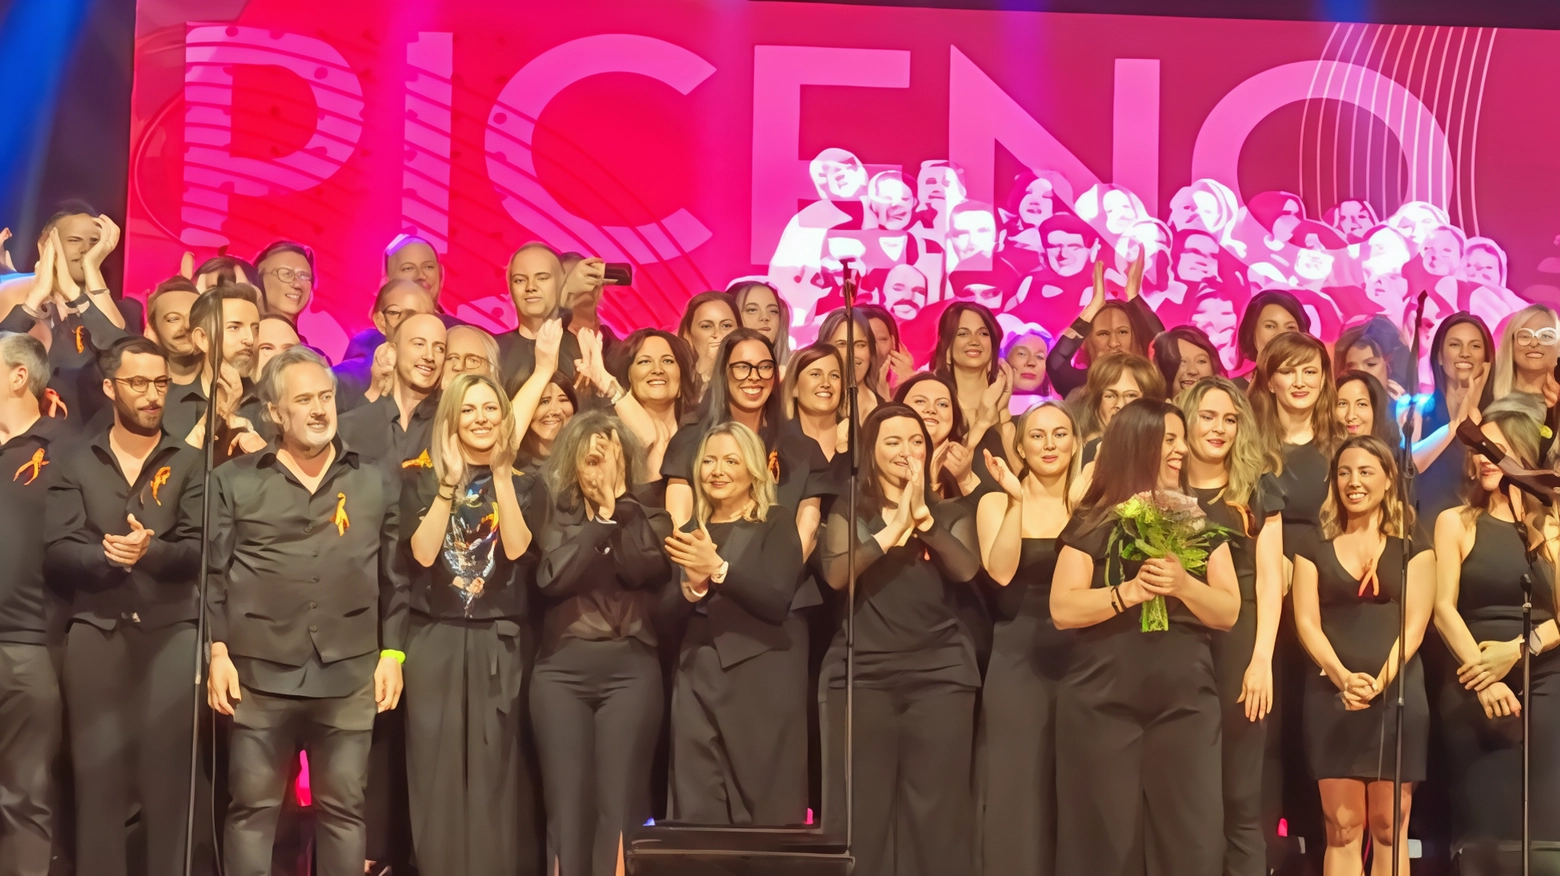 Il Piceno Pop Chorus ha ottenuto successo a Roma con uno spettacolo solidale sulla sclerosi multipla al Teatro Parioli-Costanzo. Prossimi concerti in regione e medley di Marco Mengoni.